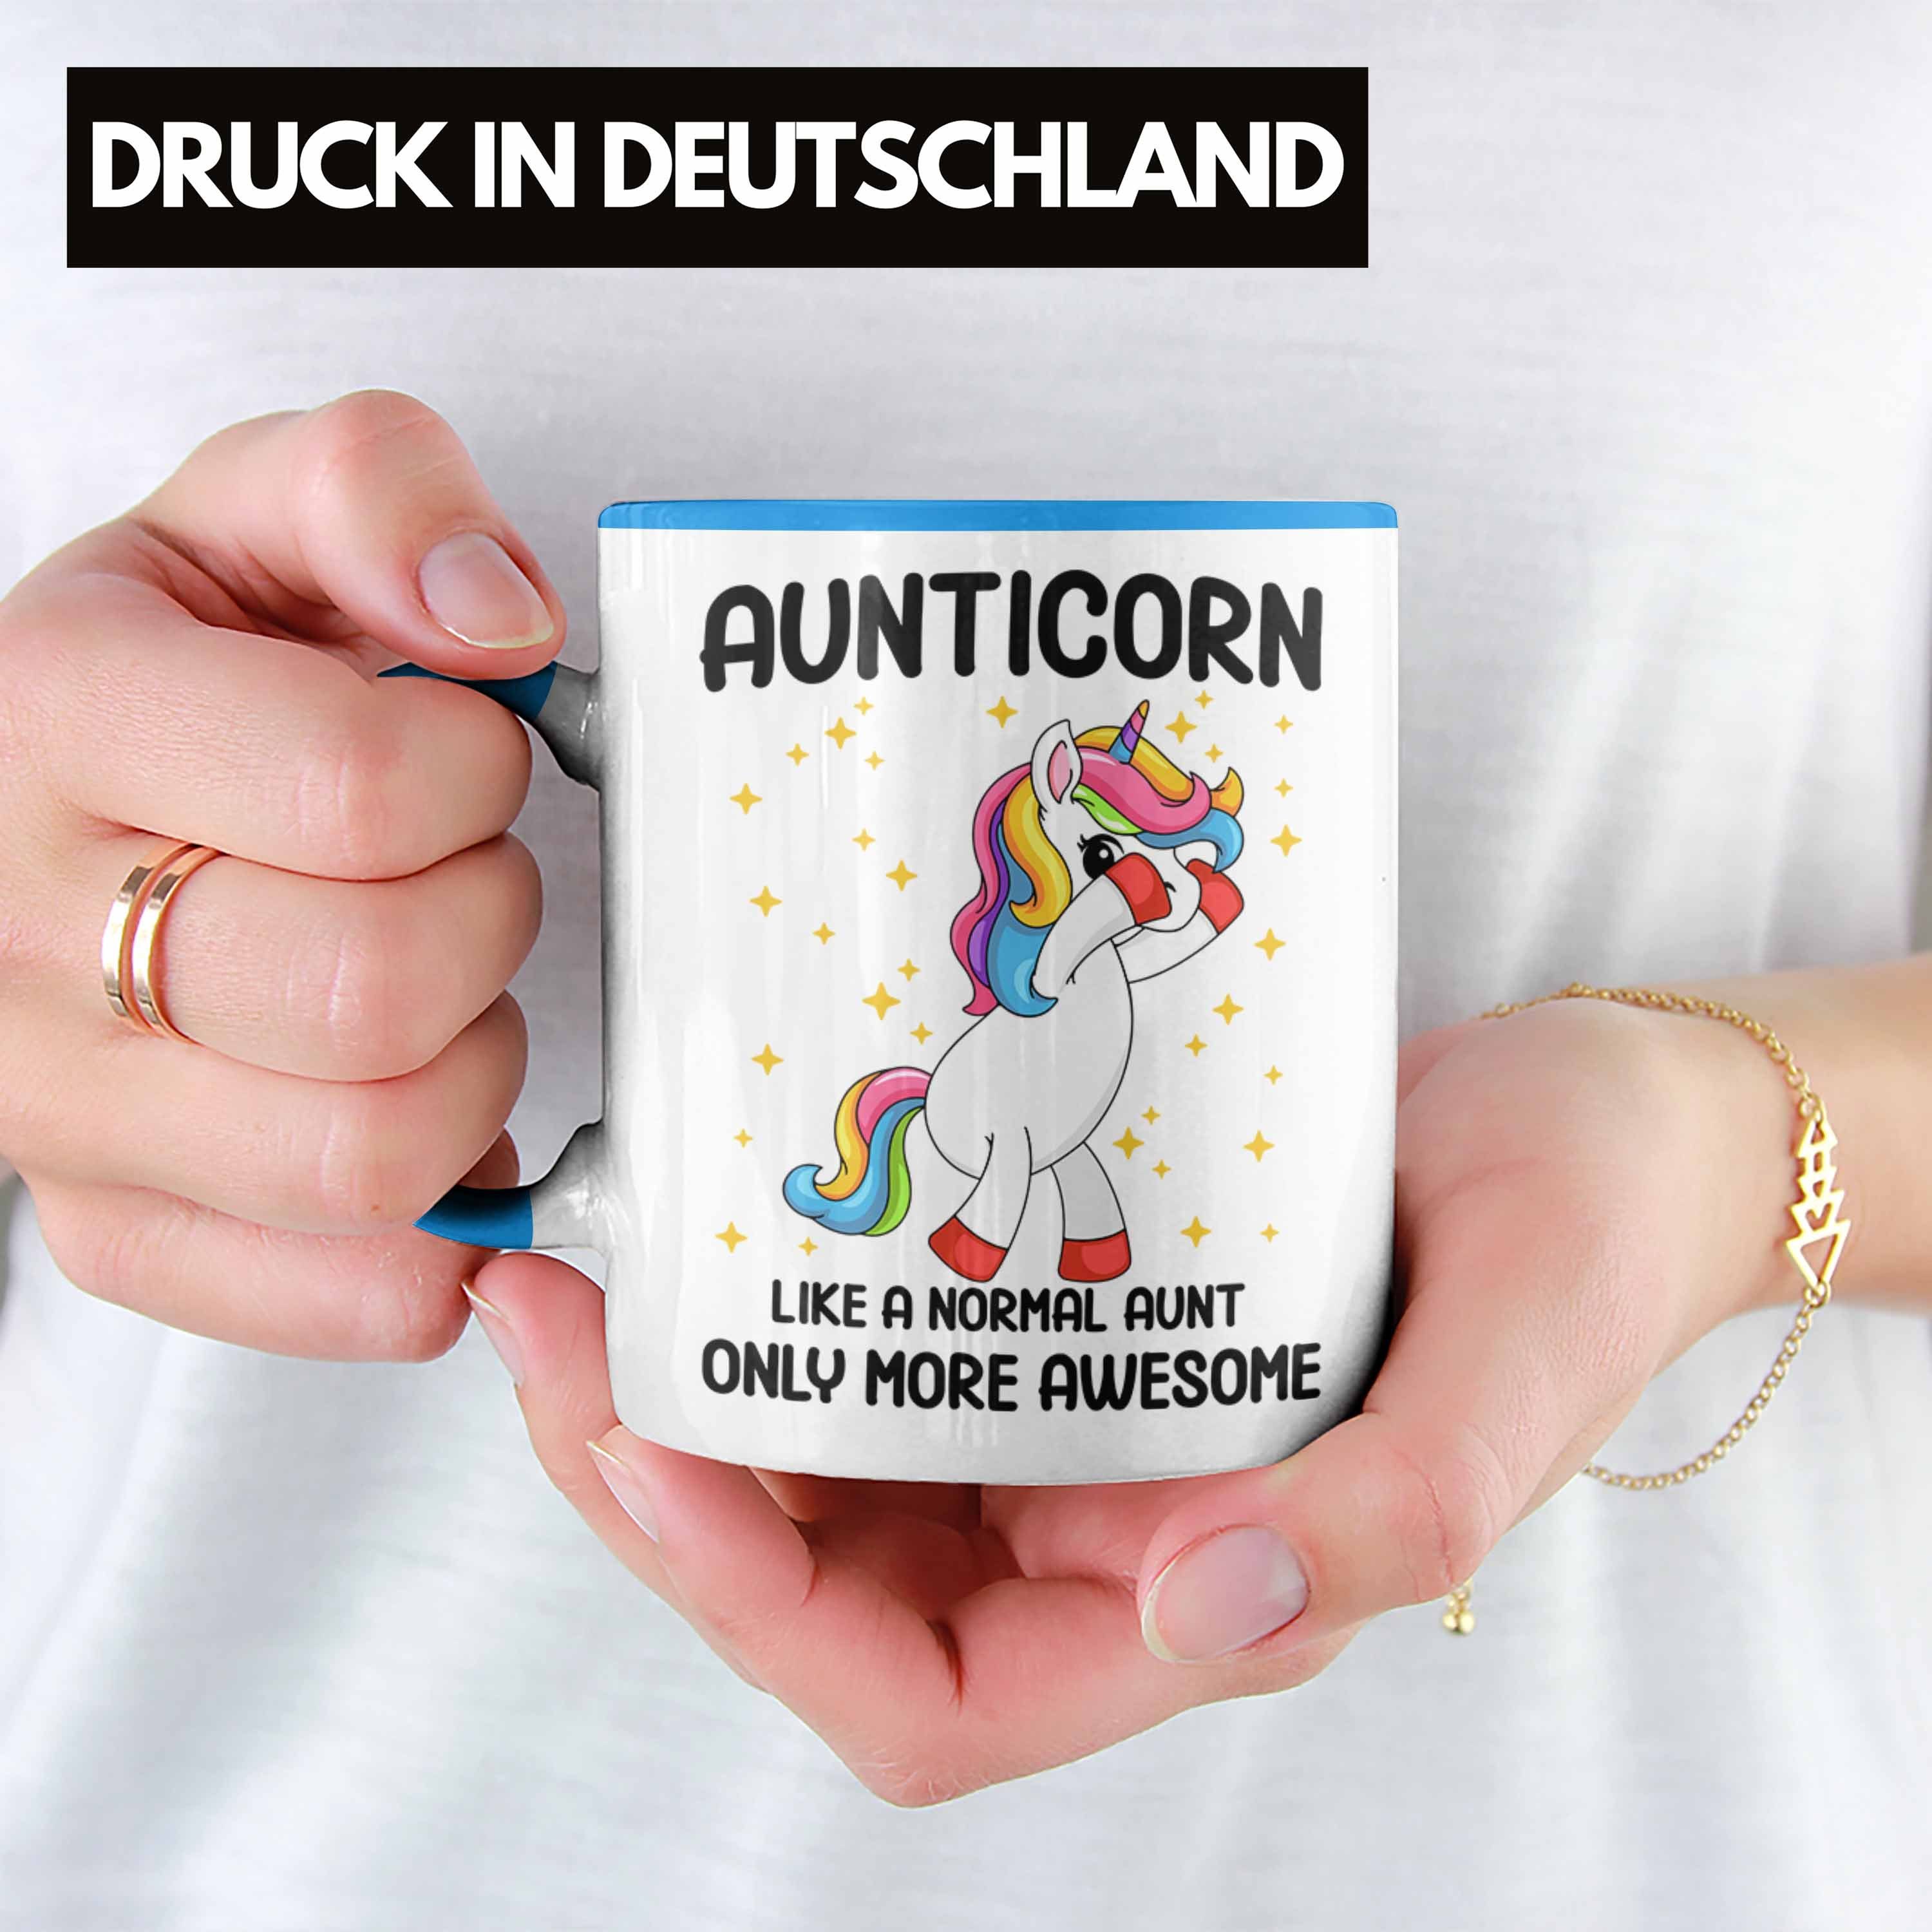 Aunticorn Trendation - Tasse Blau Geschenkidee Geschenk Tante Lustig Tasse Tante Beste Geschenk Trendation Kaffeetasse